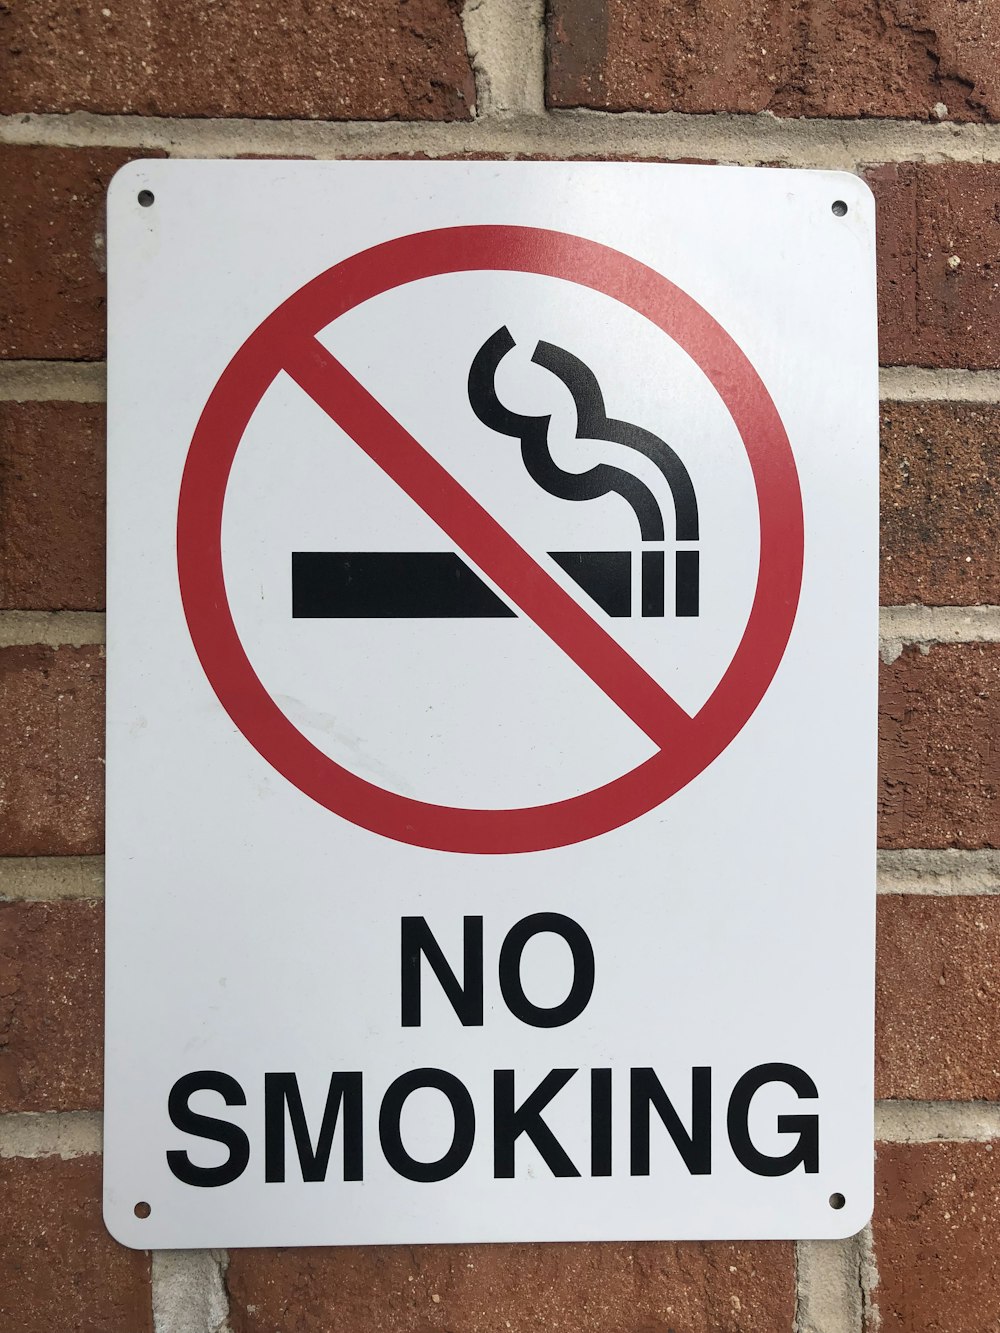 a no smoking sign on a brick wall